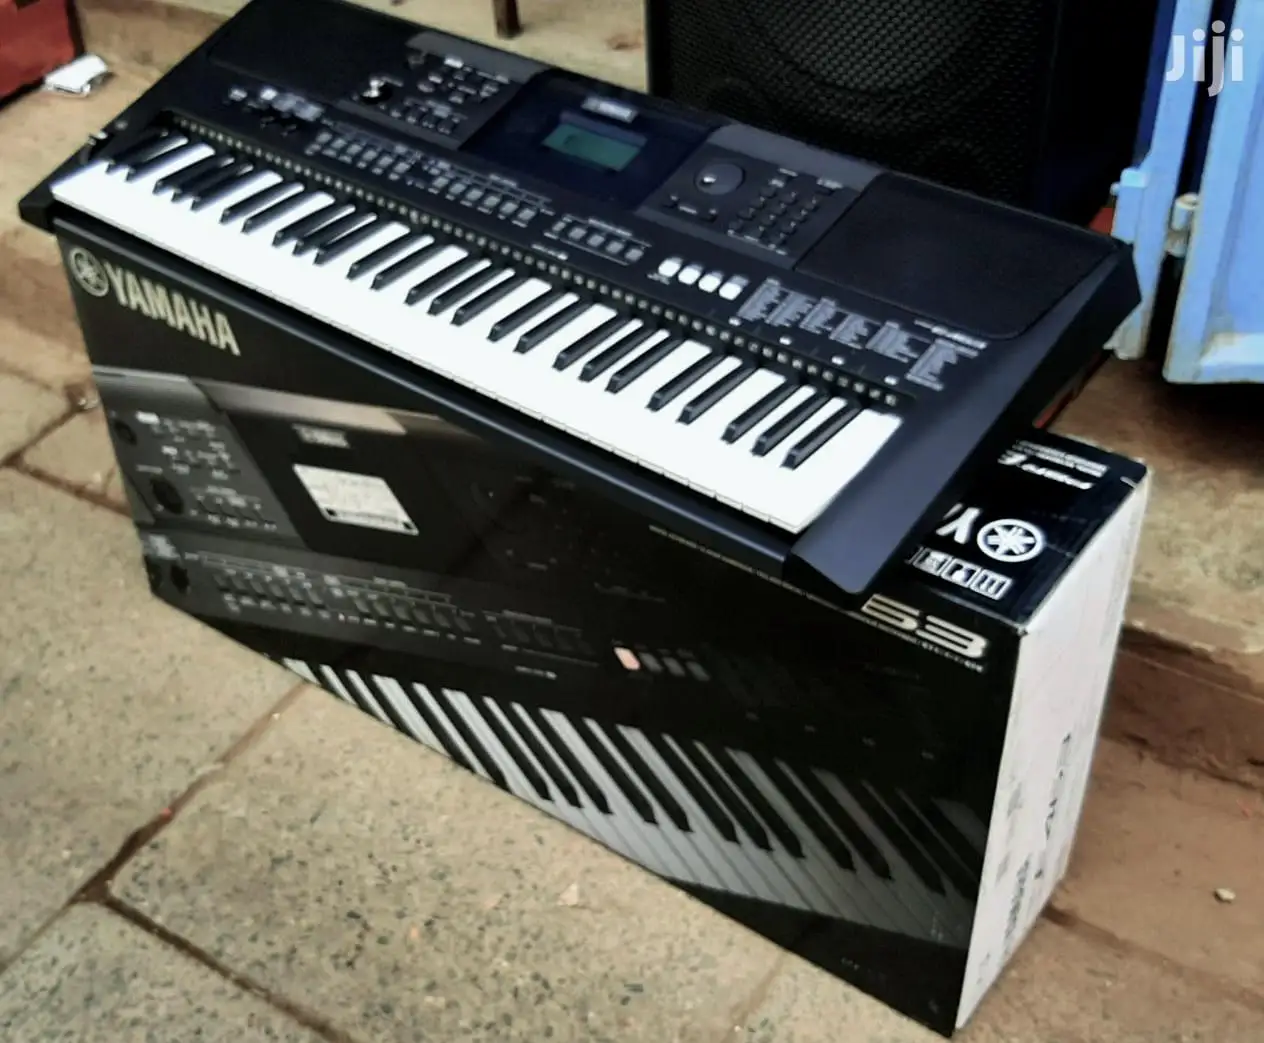 מכירות הקיץ הנחה על יוקרה אותנטית מוטיב XF8 88 מפתח פסנתר, סינתיסייזר מקלדת תחנת עבודה יסודות צרור w - 1